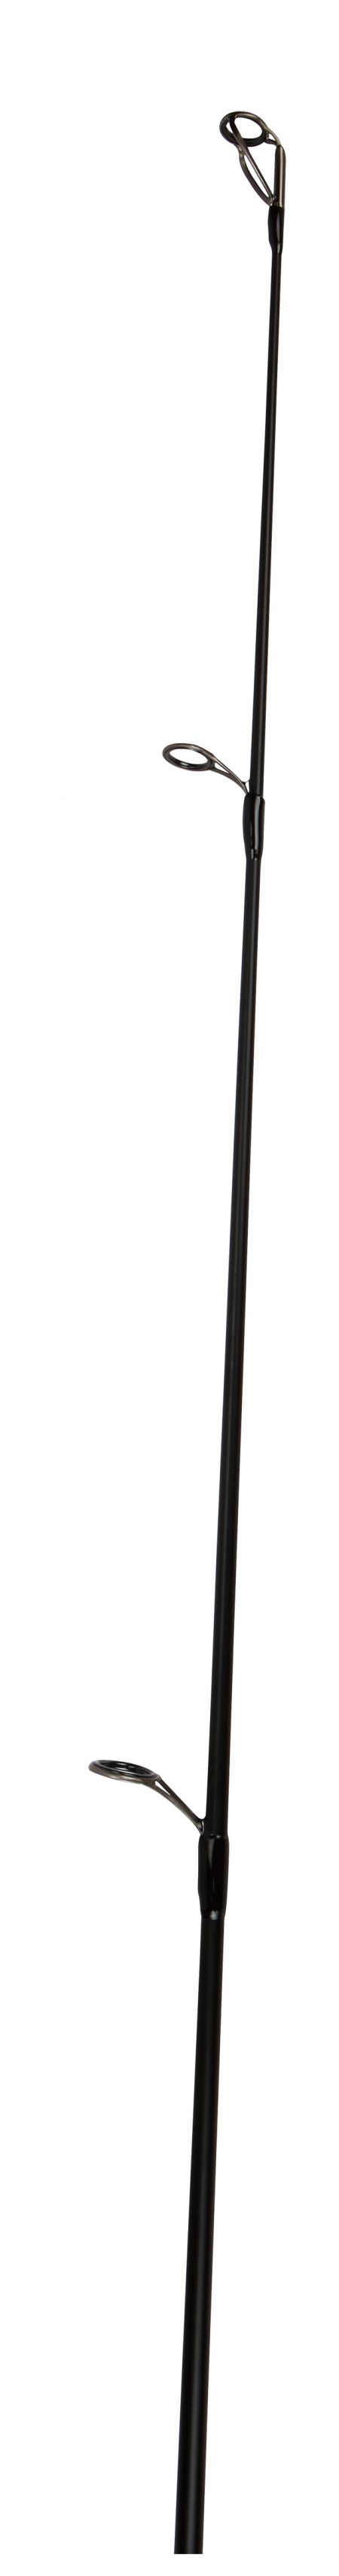 Okuma LS-8k carp Rod